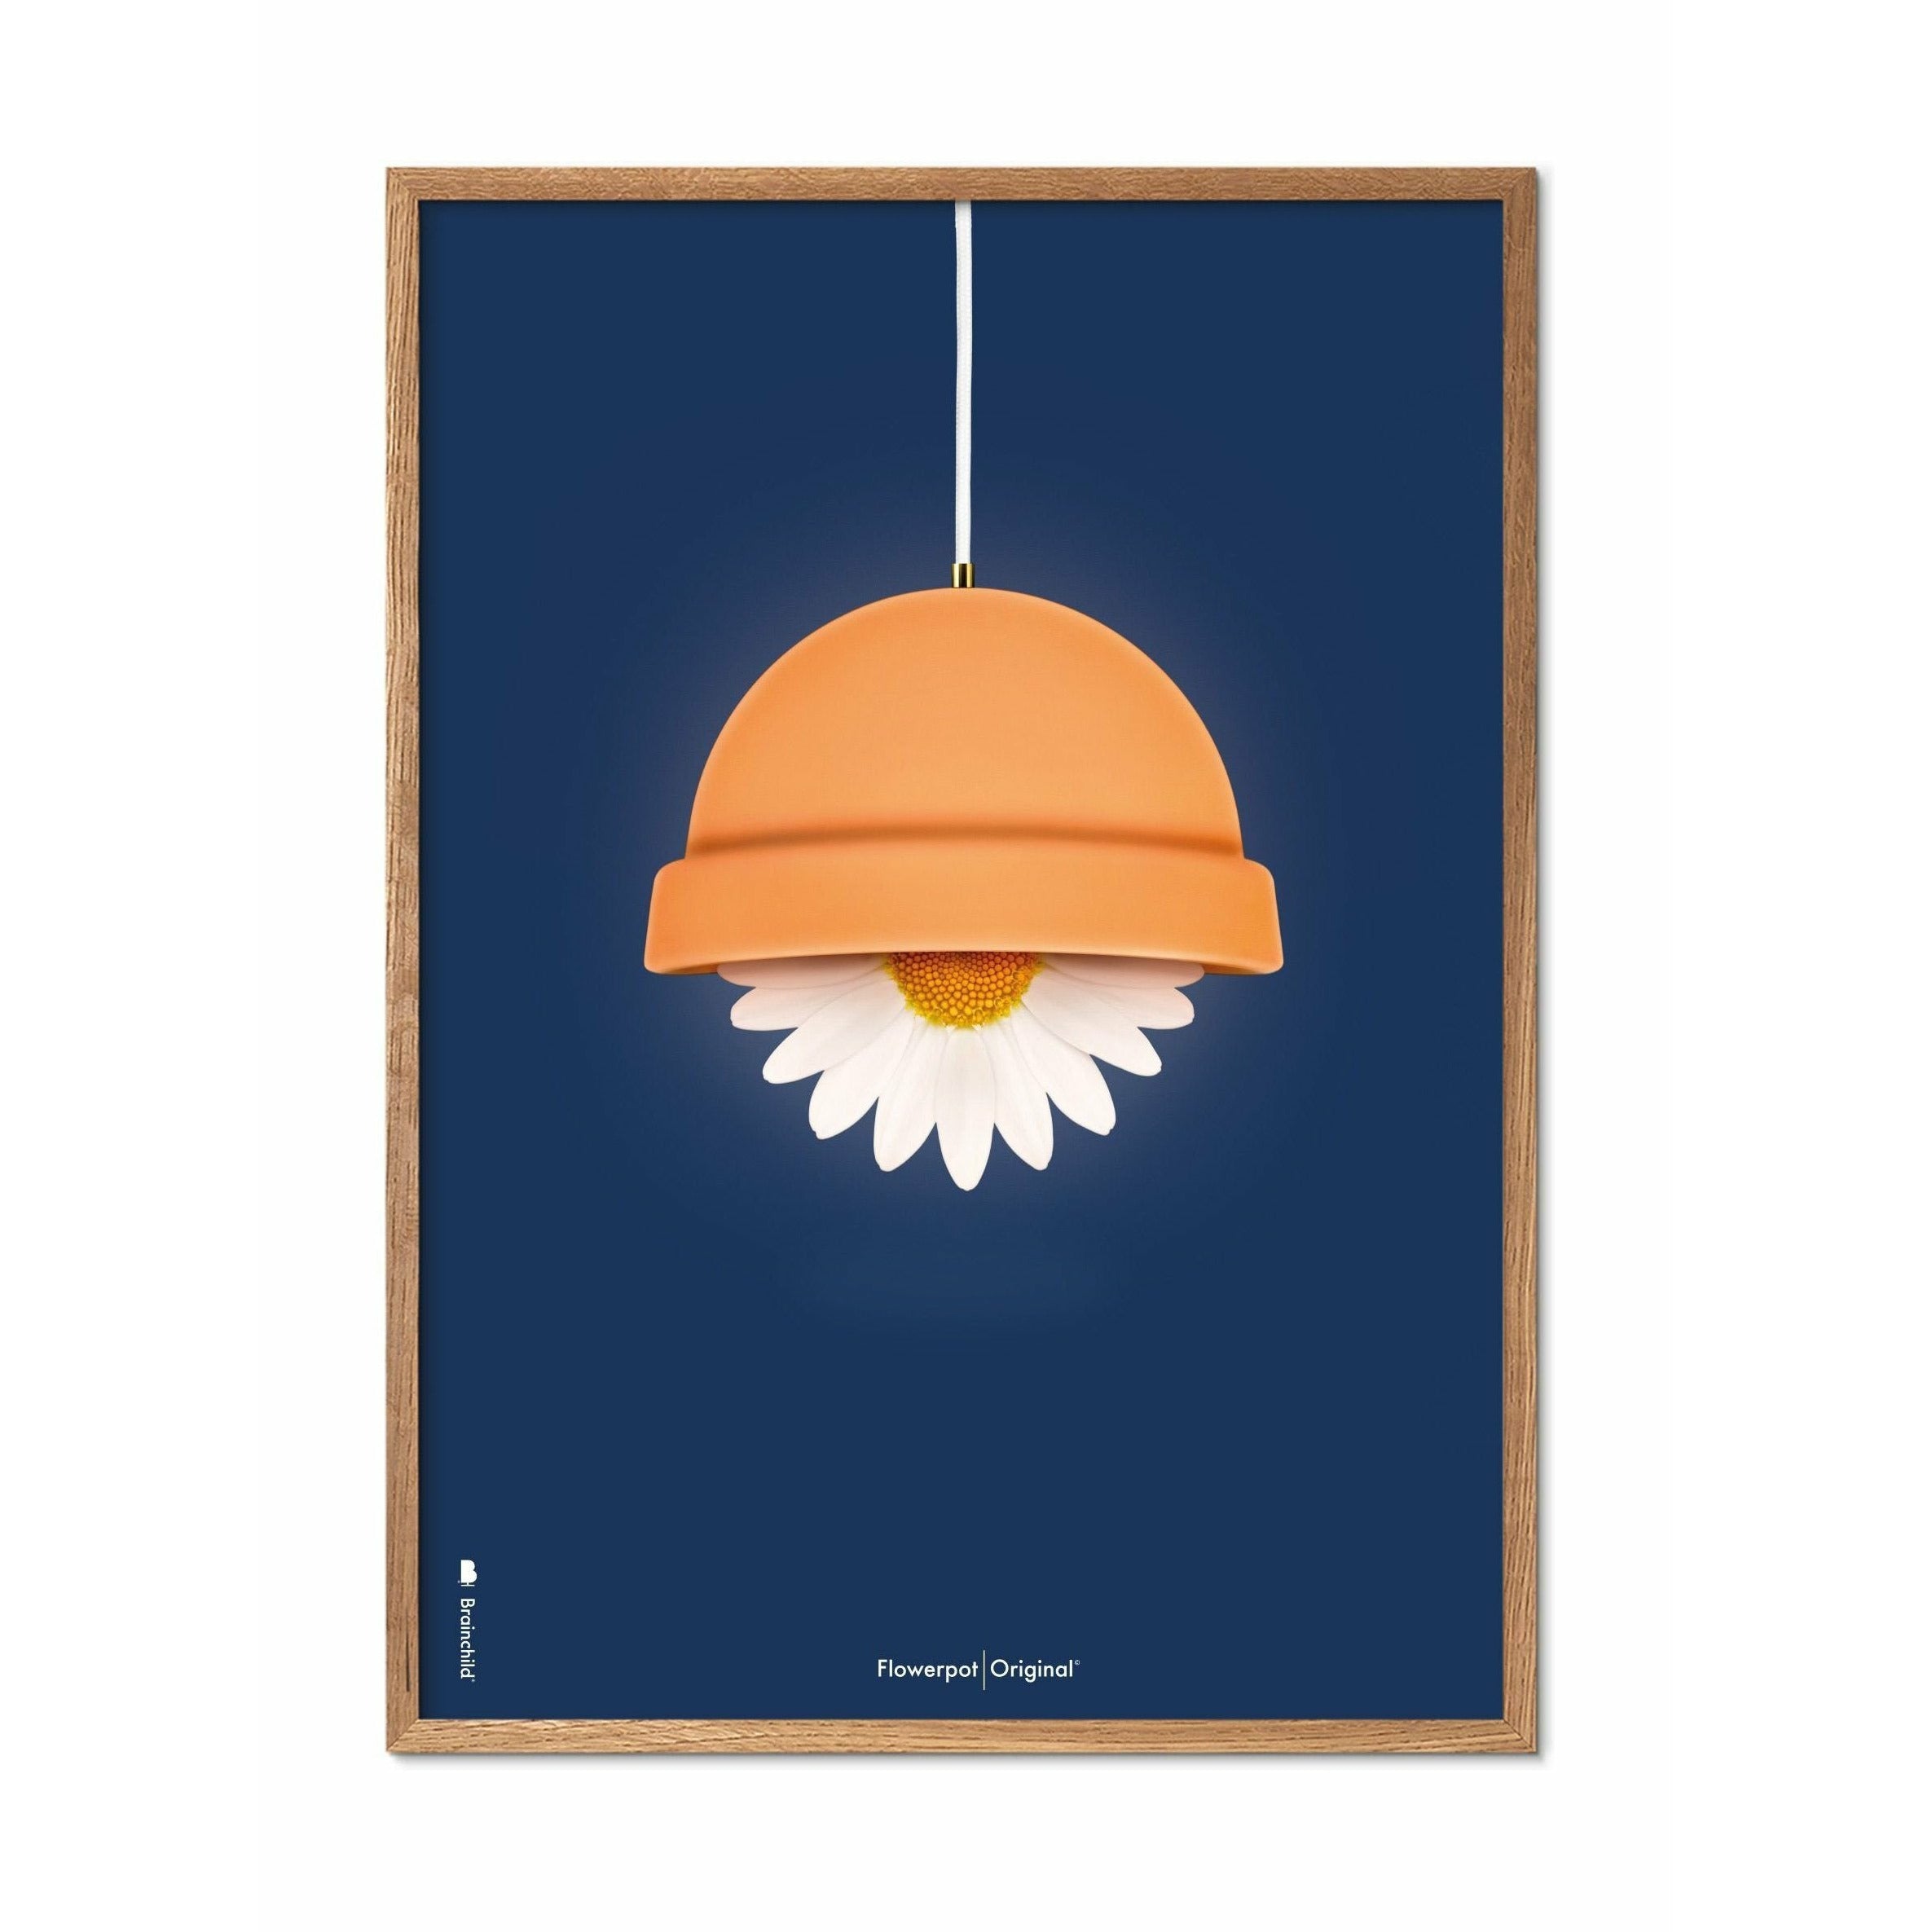 Klasický plakát Brainchild Flowerpot, rám vyrobený z lehkého dřeva 70x100 cm, tmavě modré pozadí